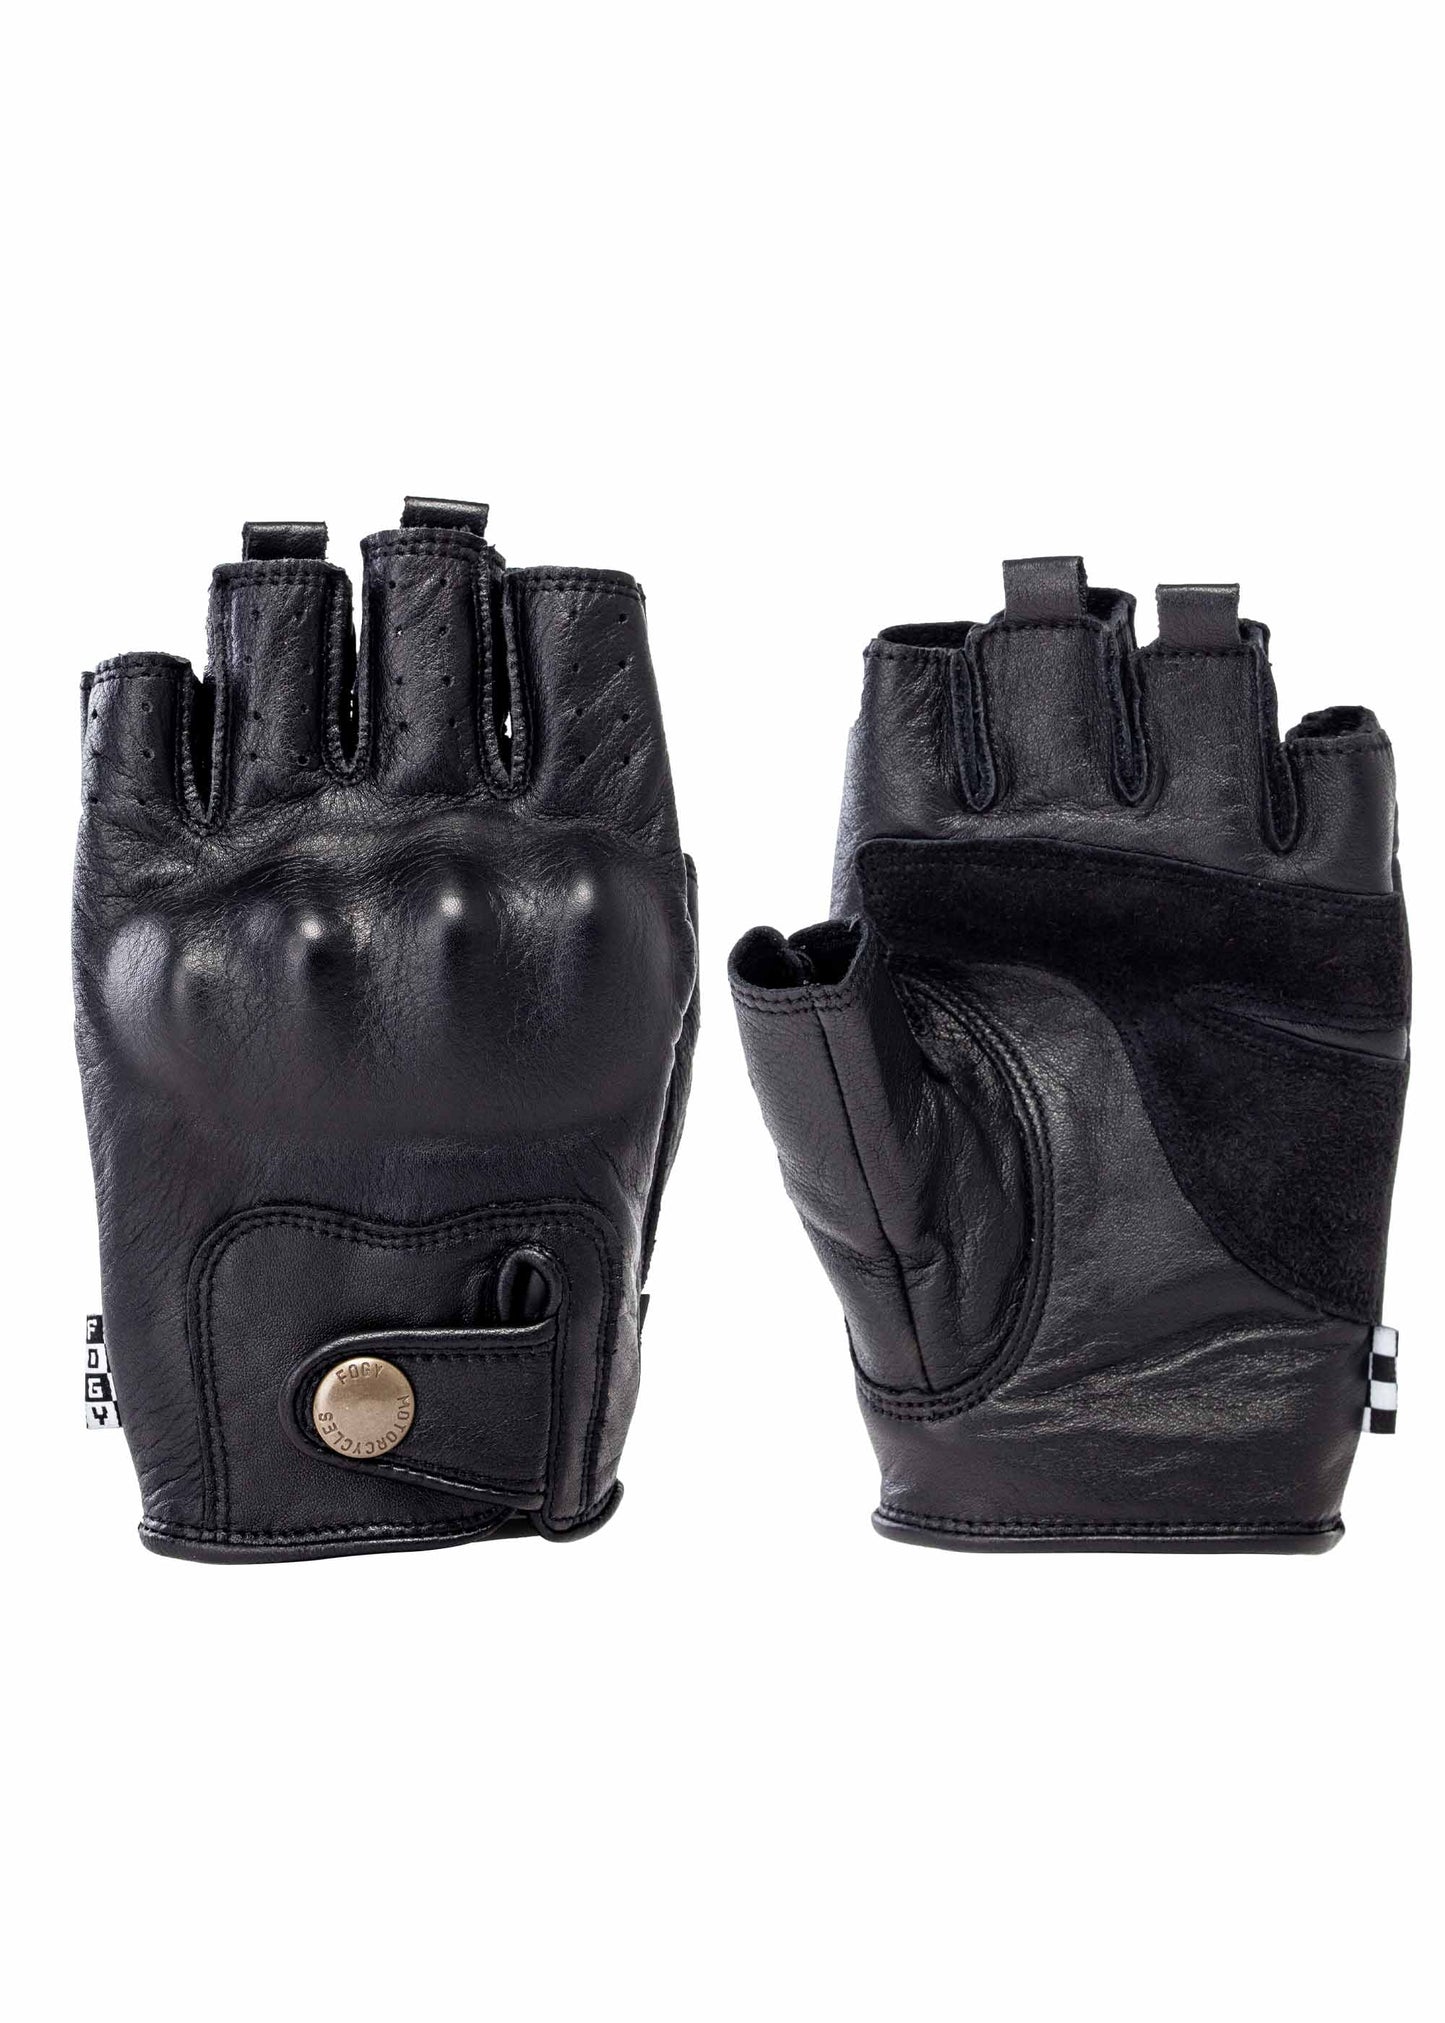 URSUS WILD Gloves - Black